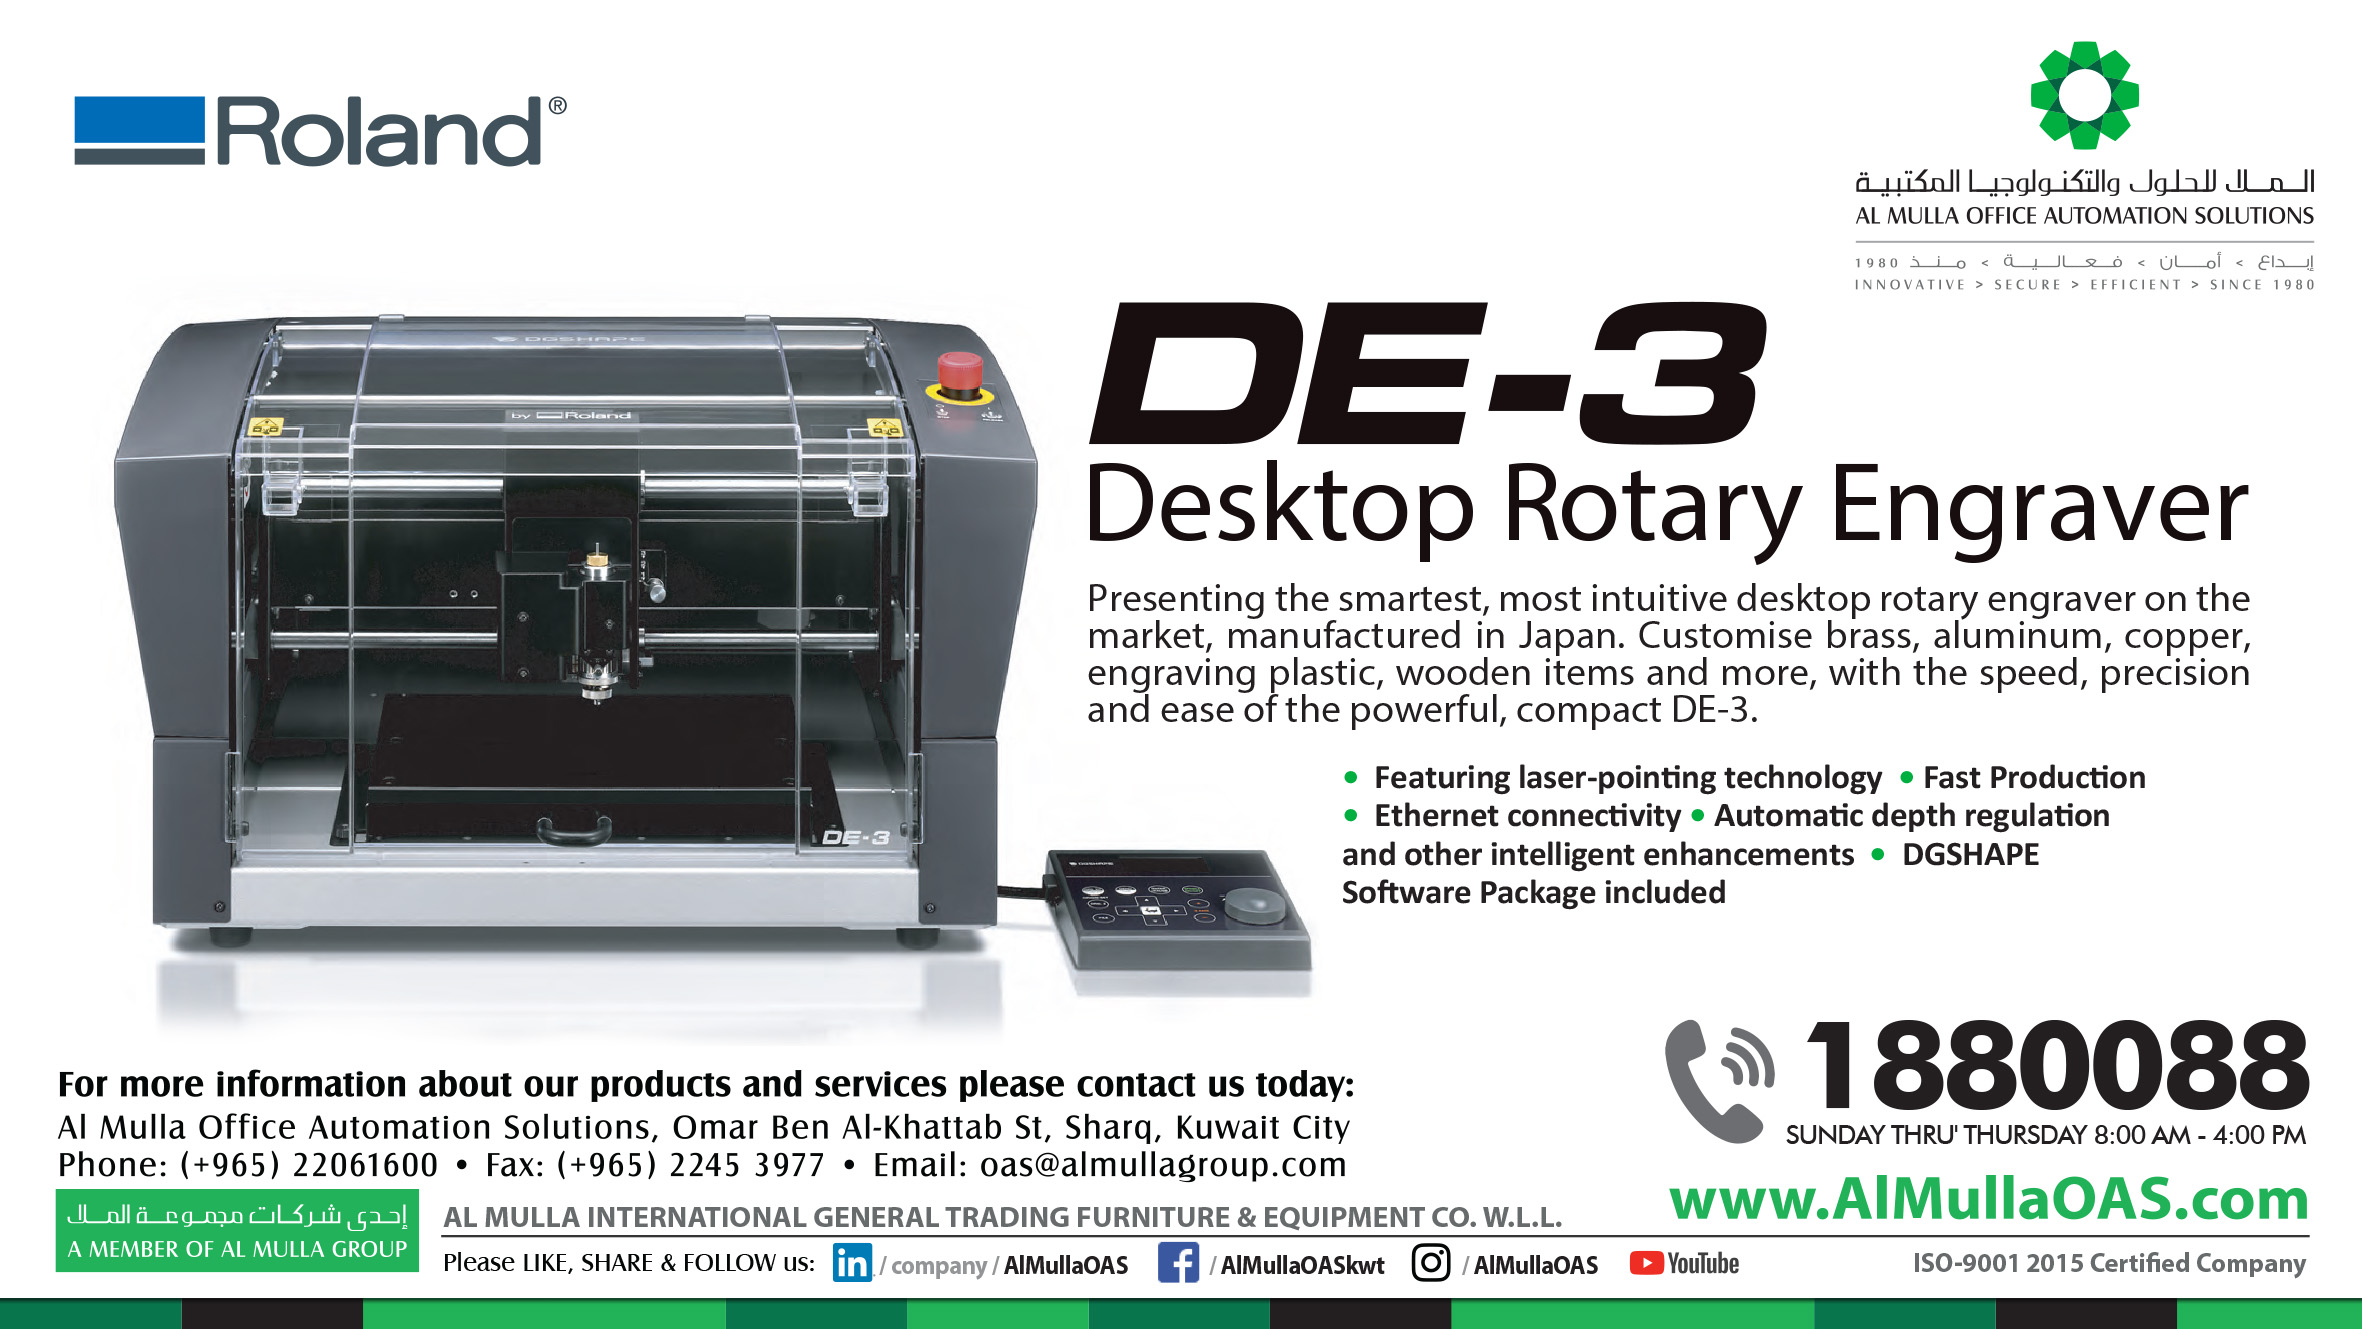 DE-3 Desktop Rotary Engraver